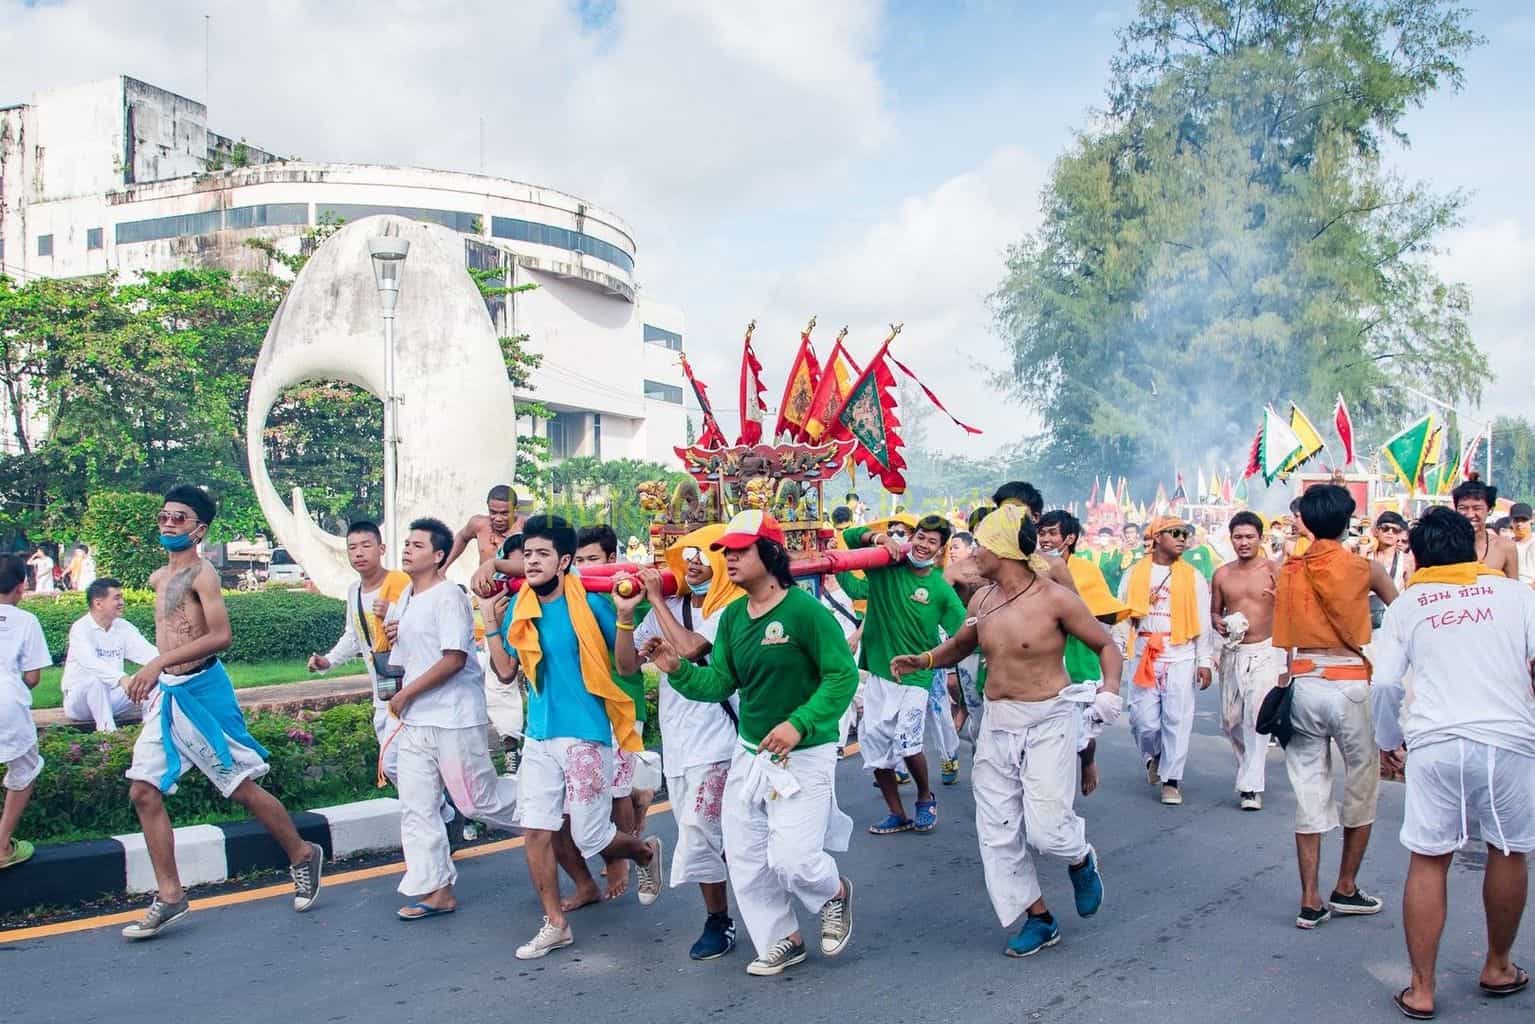 Phuket-Vegetarian-Festival-Parade-Samkong-to-Saphan-Hin-4th-October-13